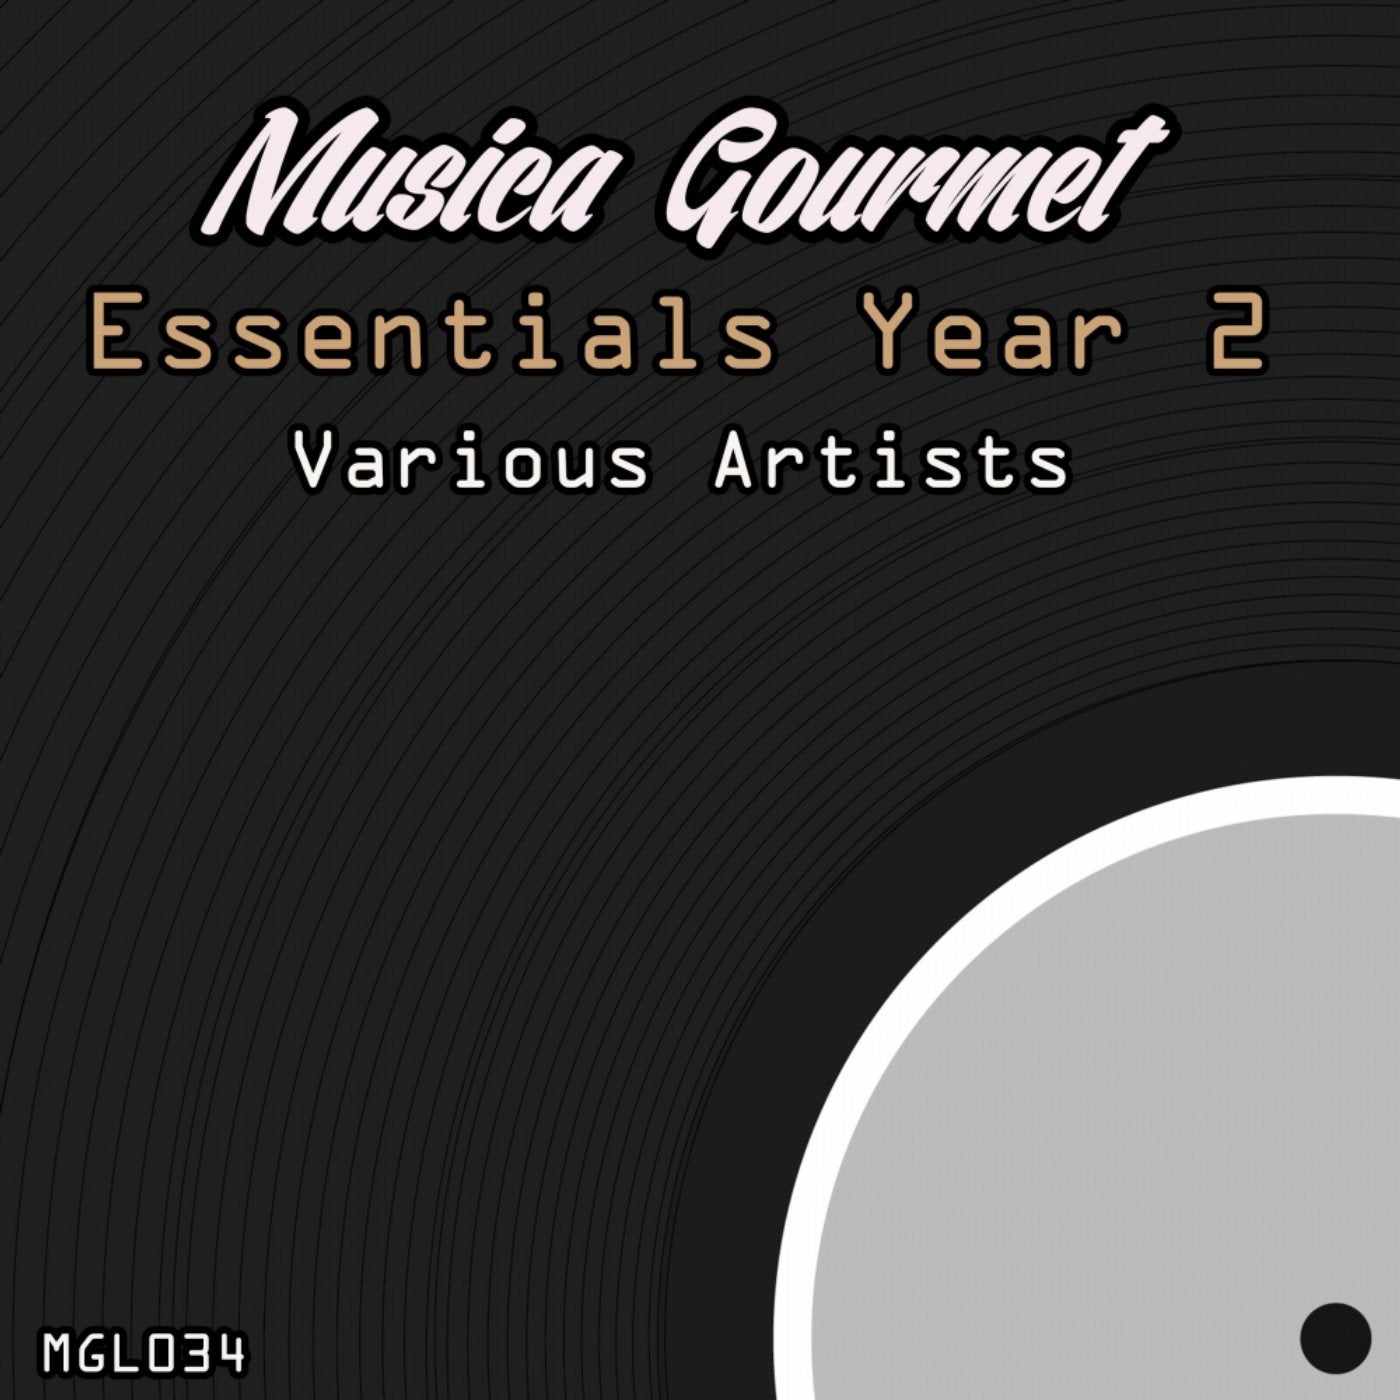 Musica Gourmet Essentials Year 2